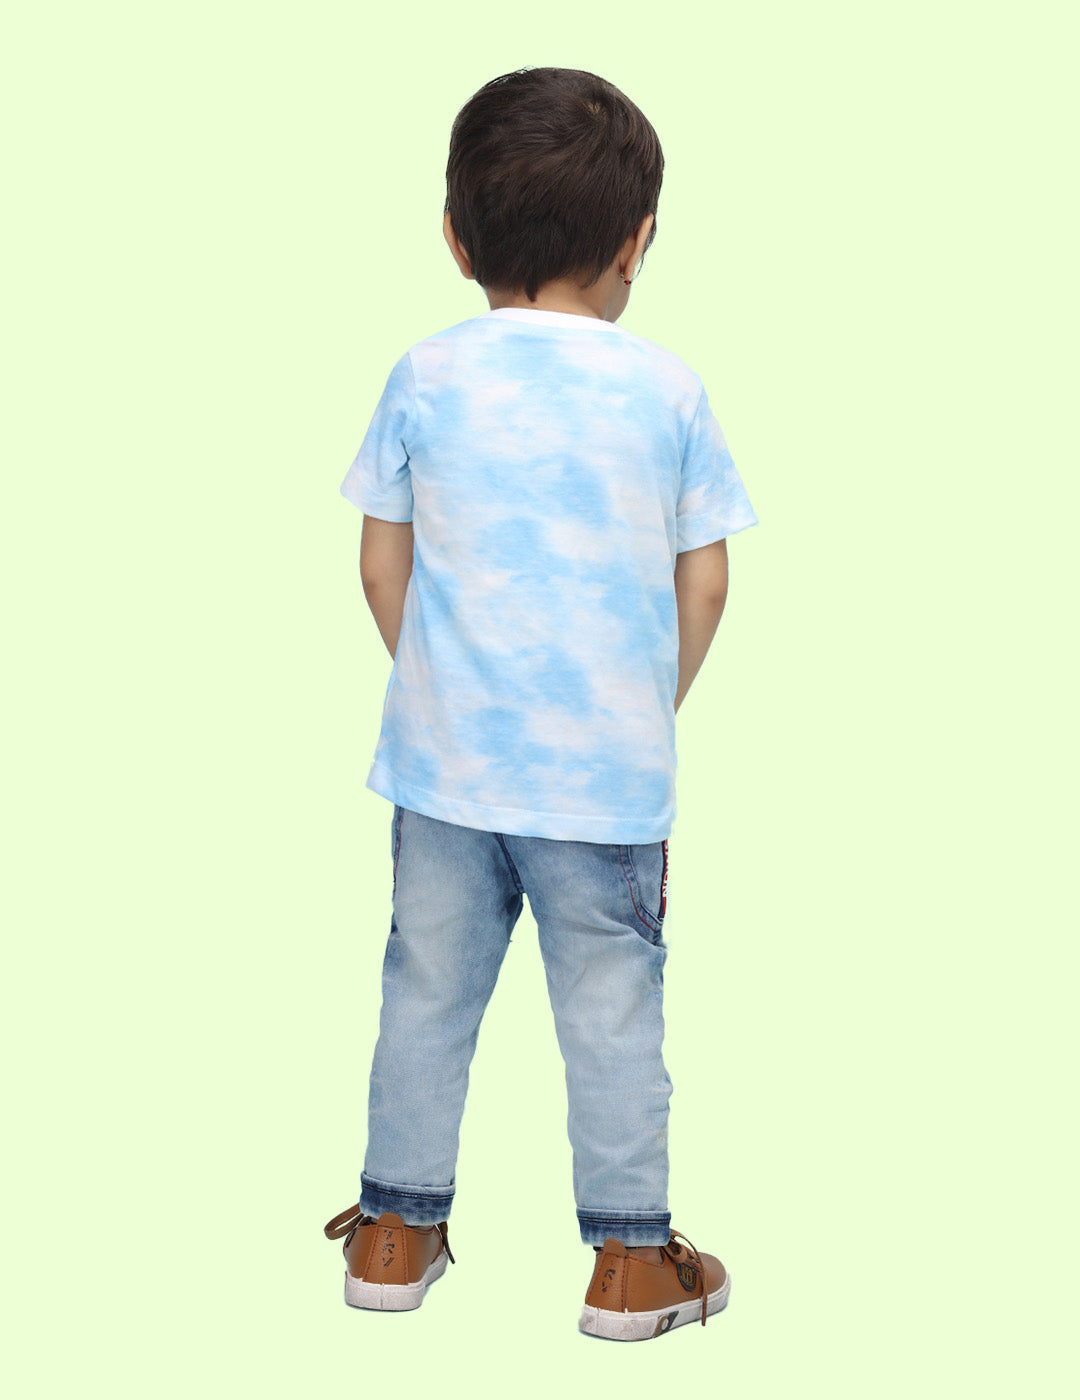 Nusyl infants blue be cute printed Tie & Dye tshirt.